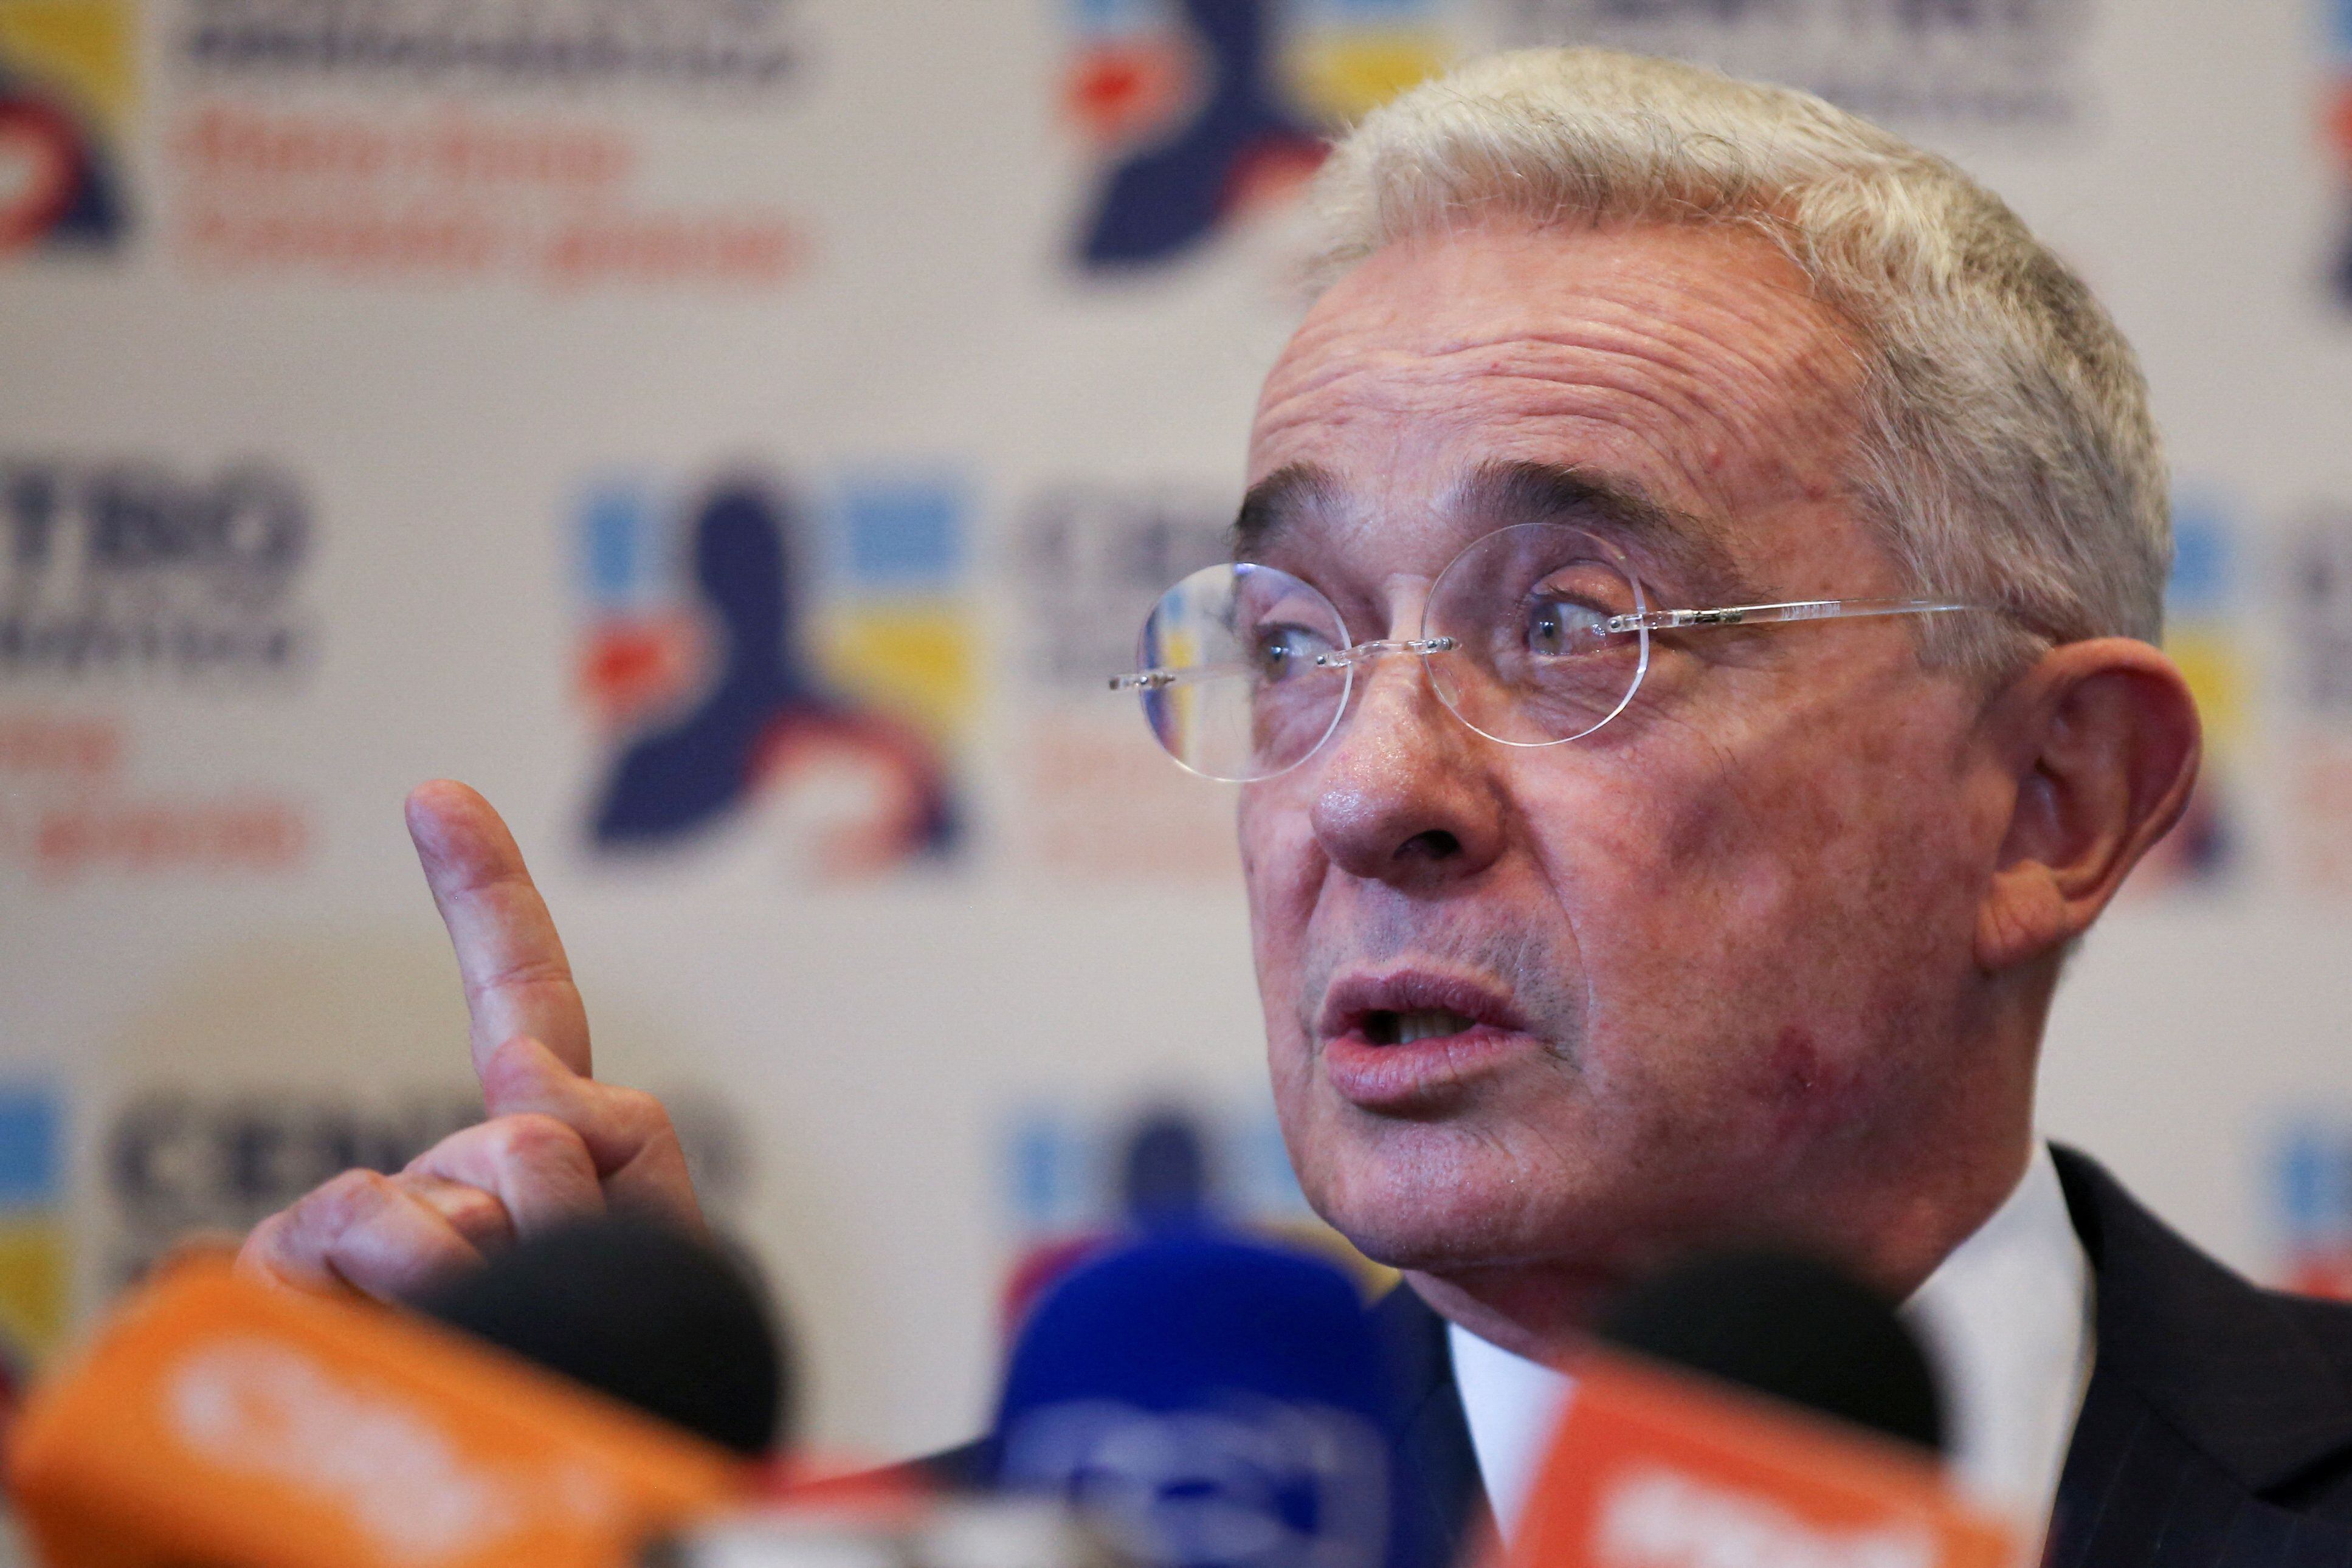 El expresidente Álvaro Uribe no está de acuerdo con que se cobre valorización a los antioqueños por obras ya ejecutadas - crédito Luisa González/REUTERS